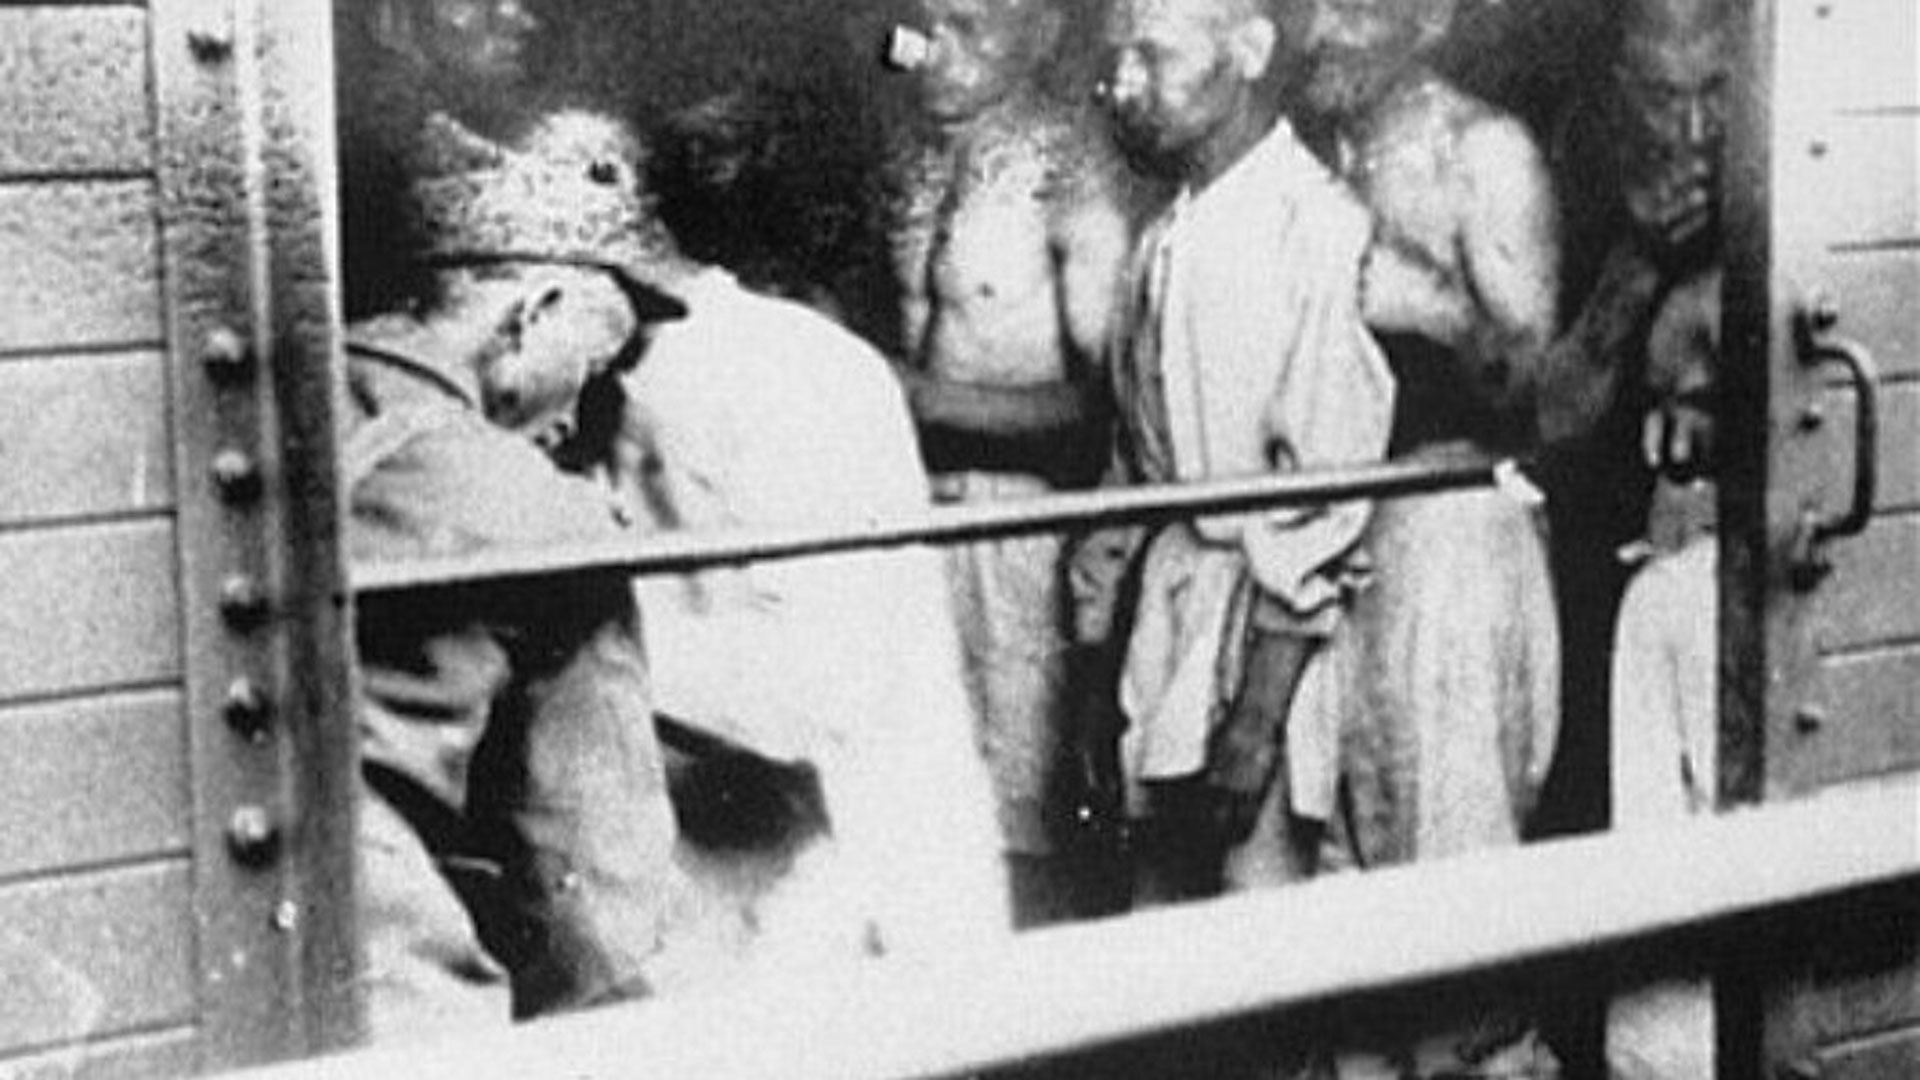 Médicos rumanos examinan a deportados judíos de Iasi en el "Tren de la Muerte" de 1941